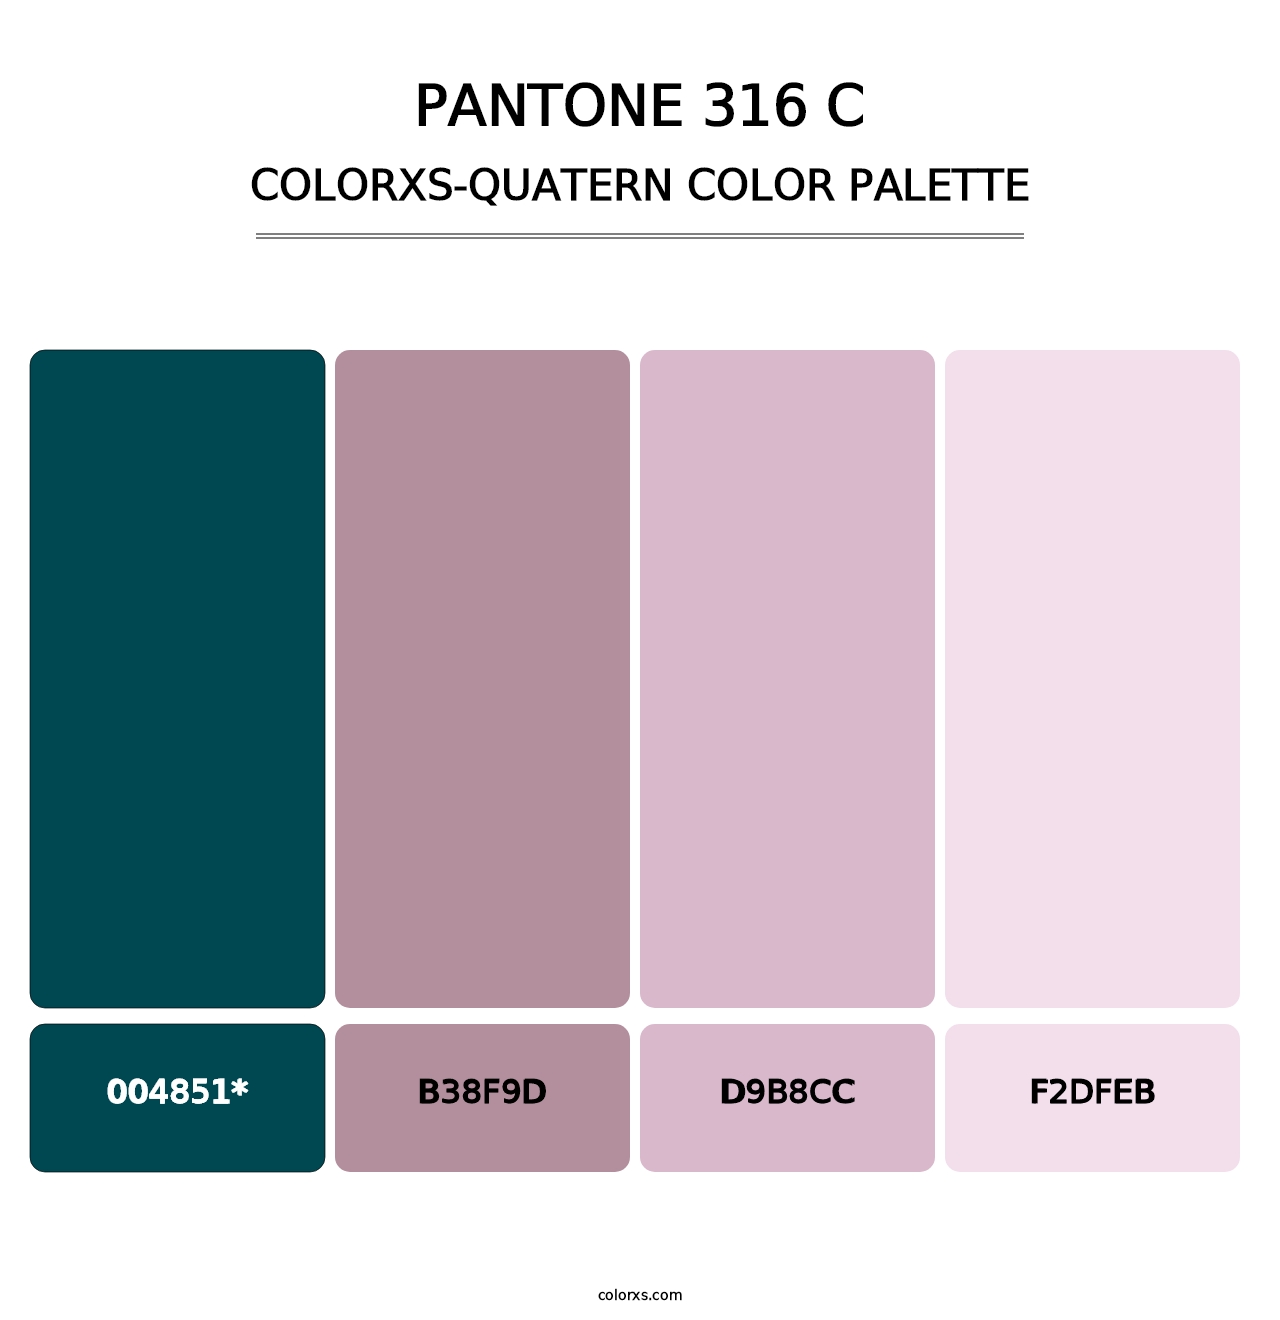 PANTONE 316 C - Colorxs Quatern Palette